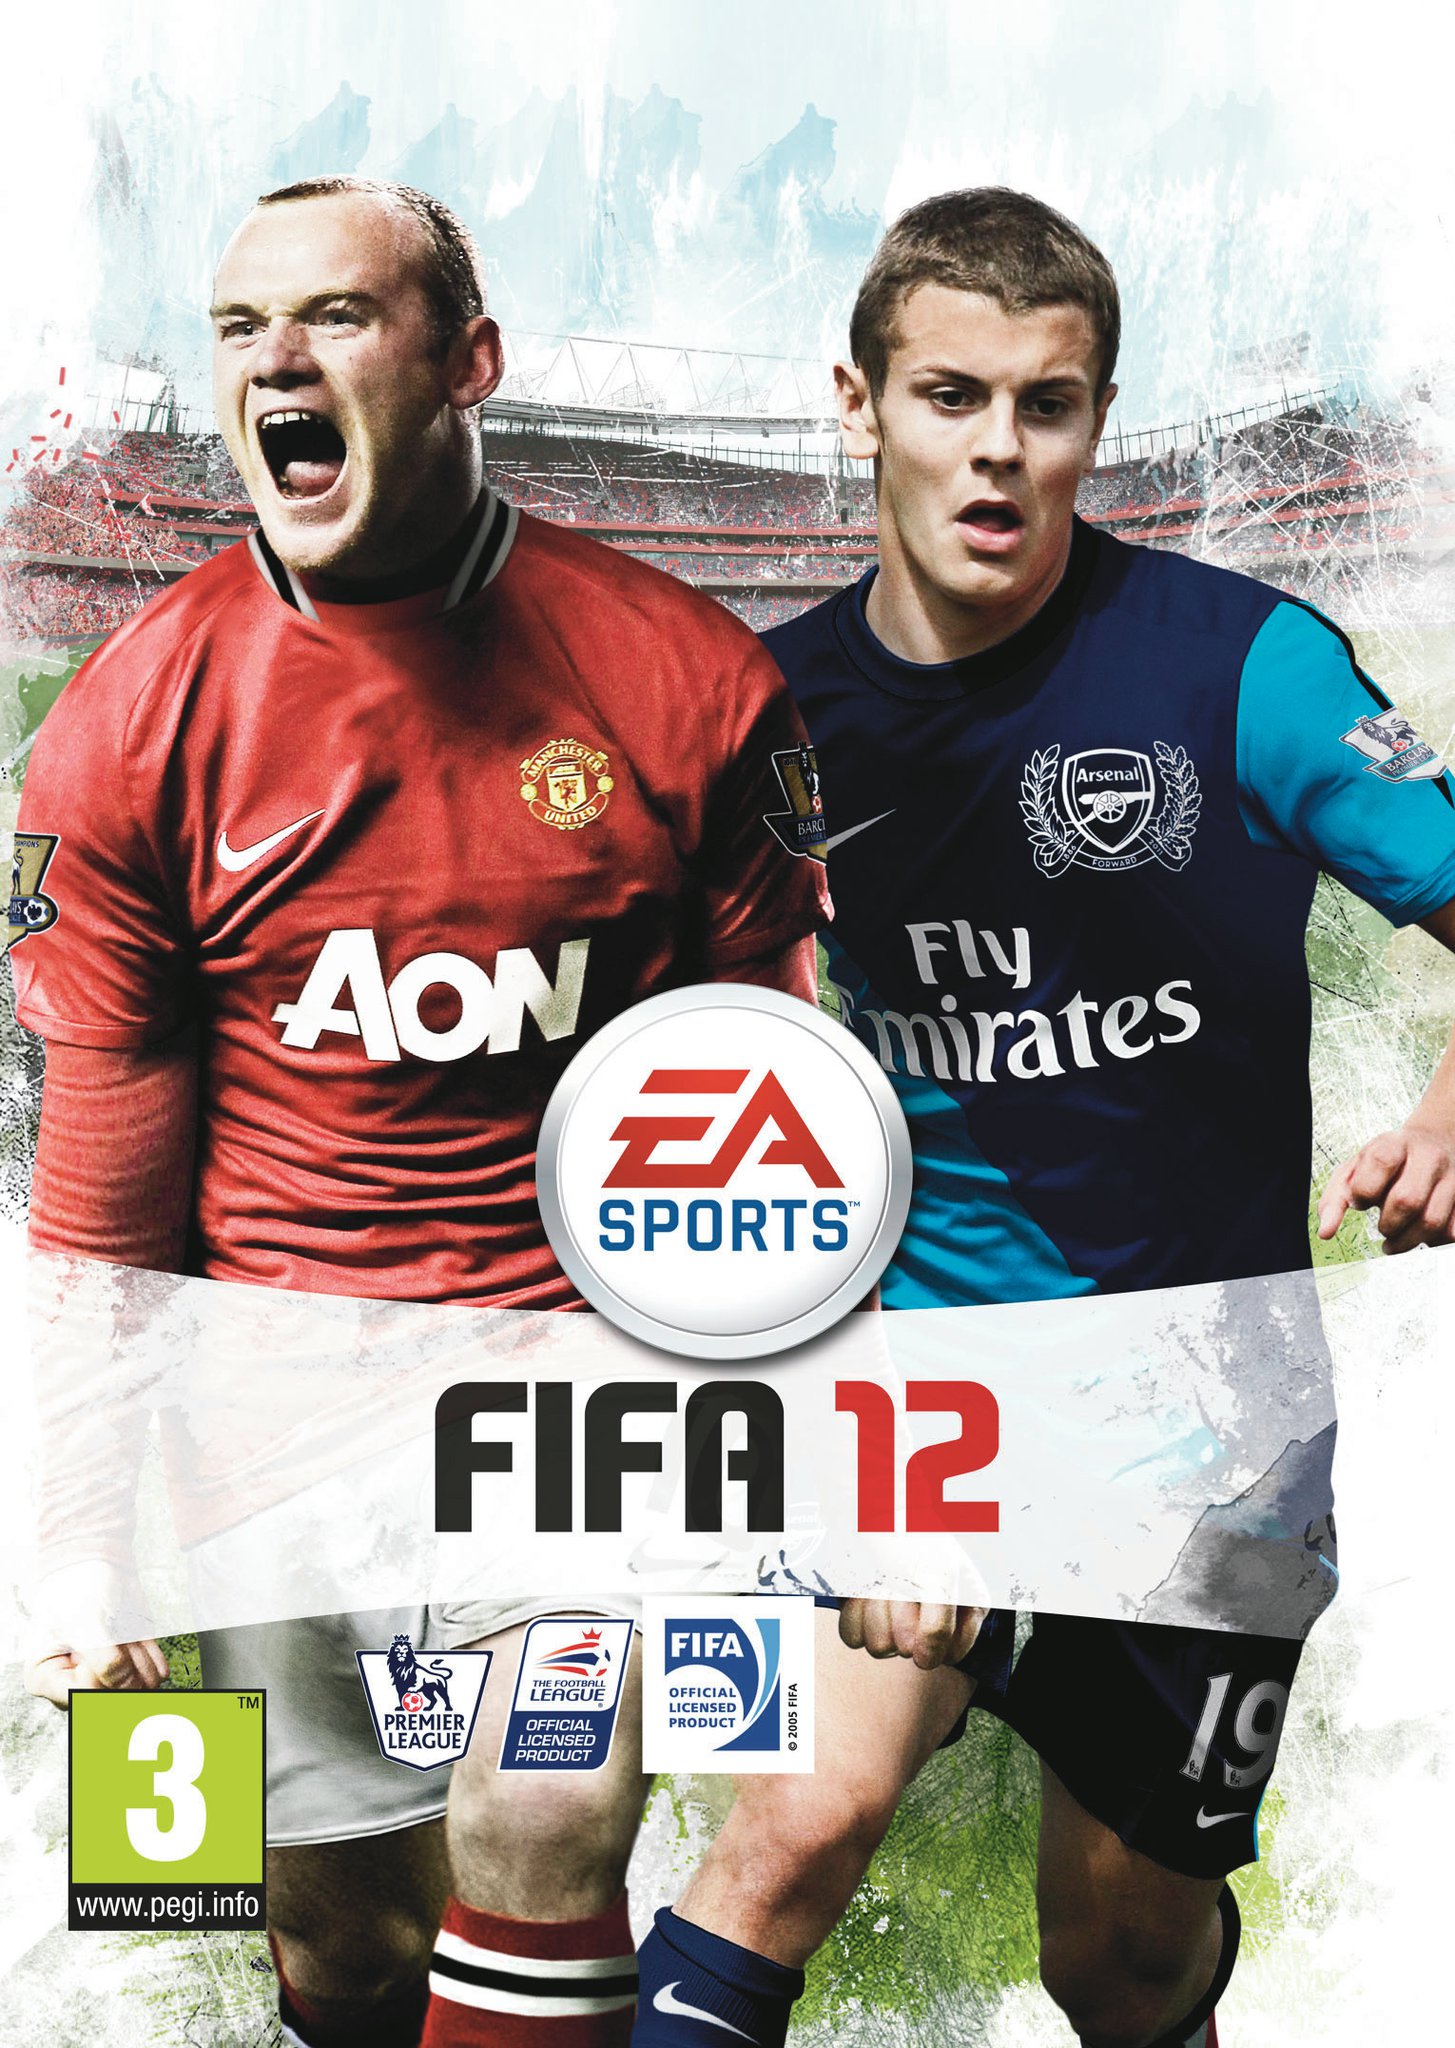 FIFA 22 Vs FIFA 21 PS3 